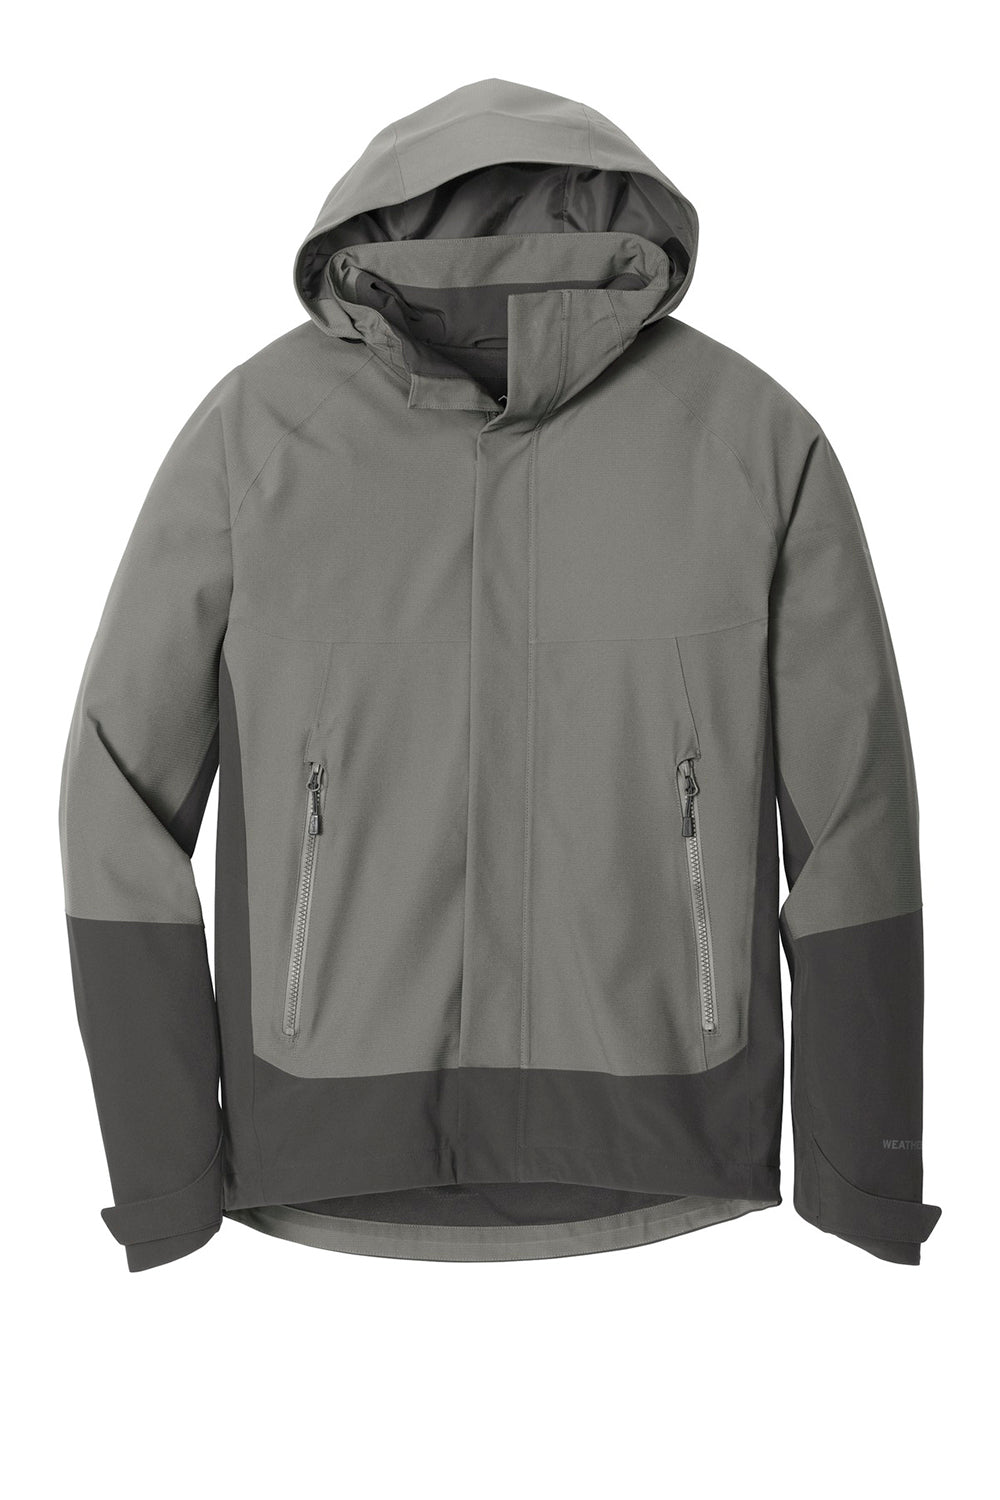 Eddie Bauer EB558 Mens WeatherEdge Waterproof Full Zip Hooded Jacket Metal Grey Flat Front